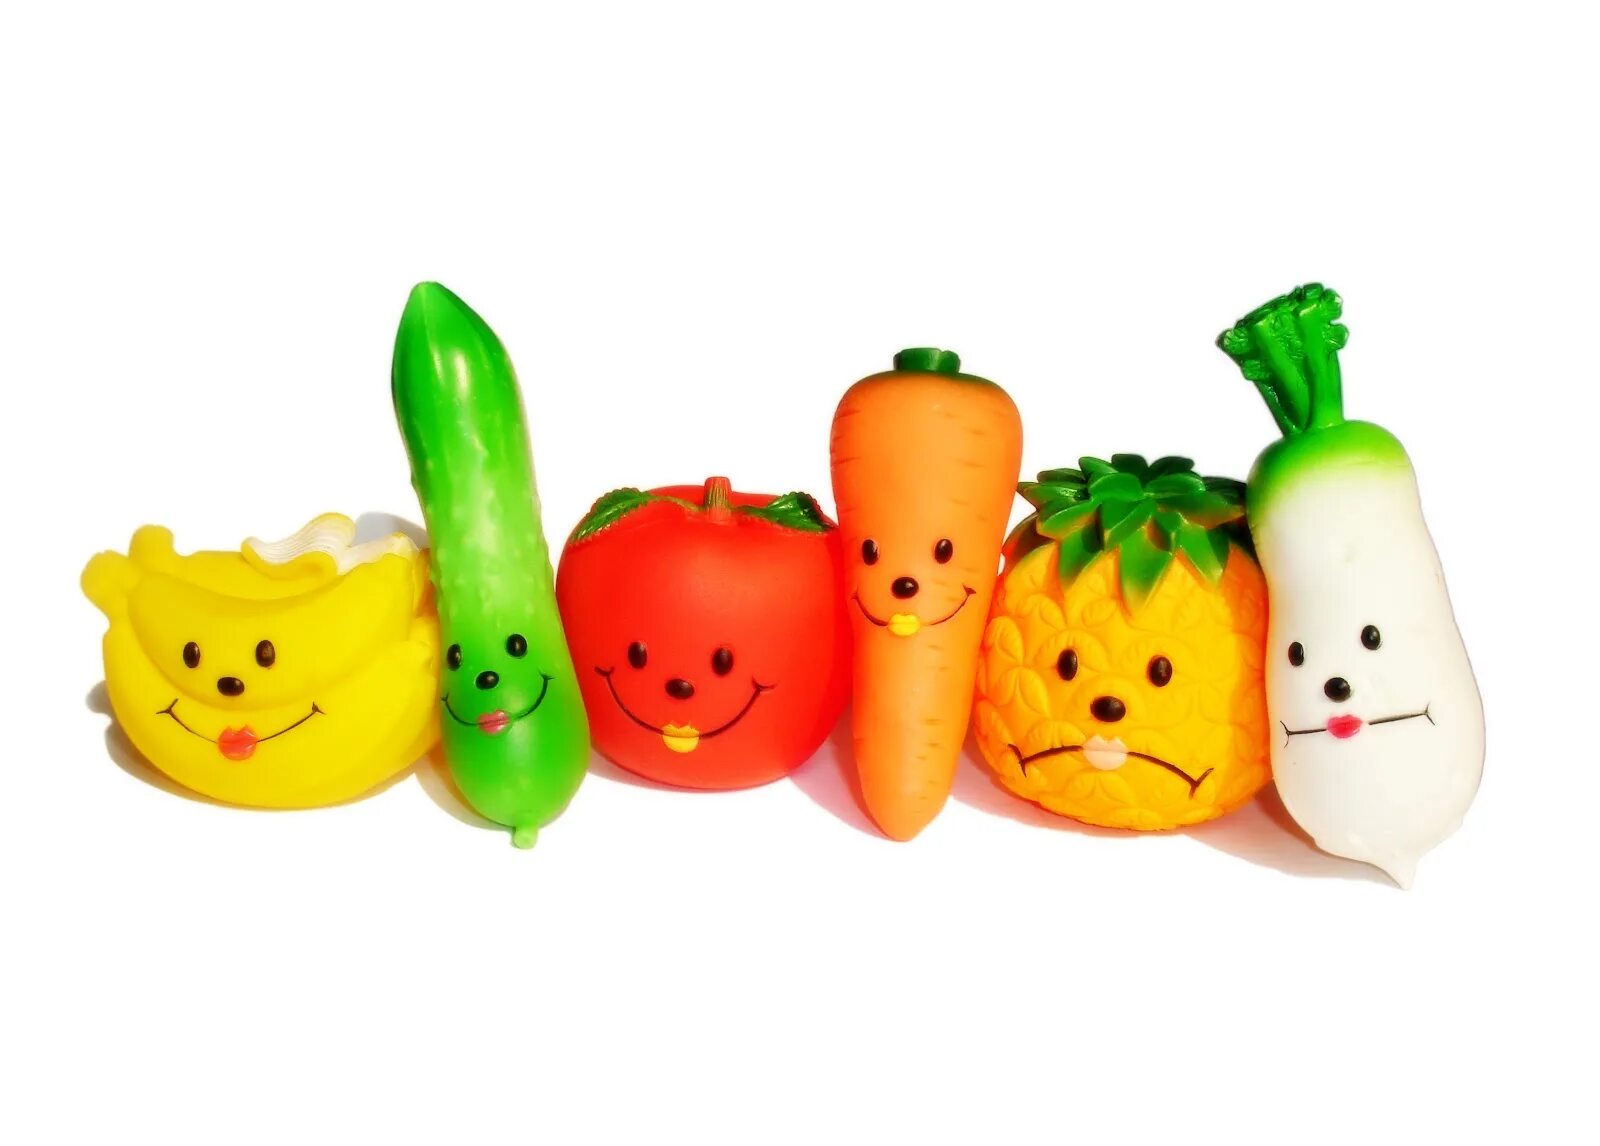 Vegetable family. Живые овощи. Овощи и фрукты. Овощи улыбаются. Семья овощей.